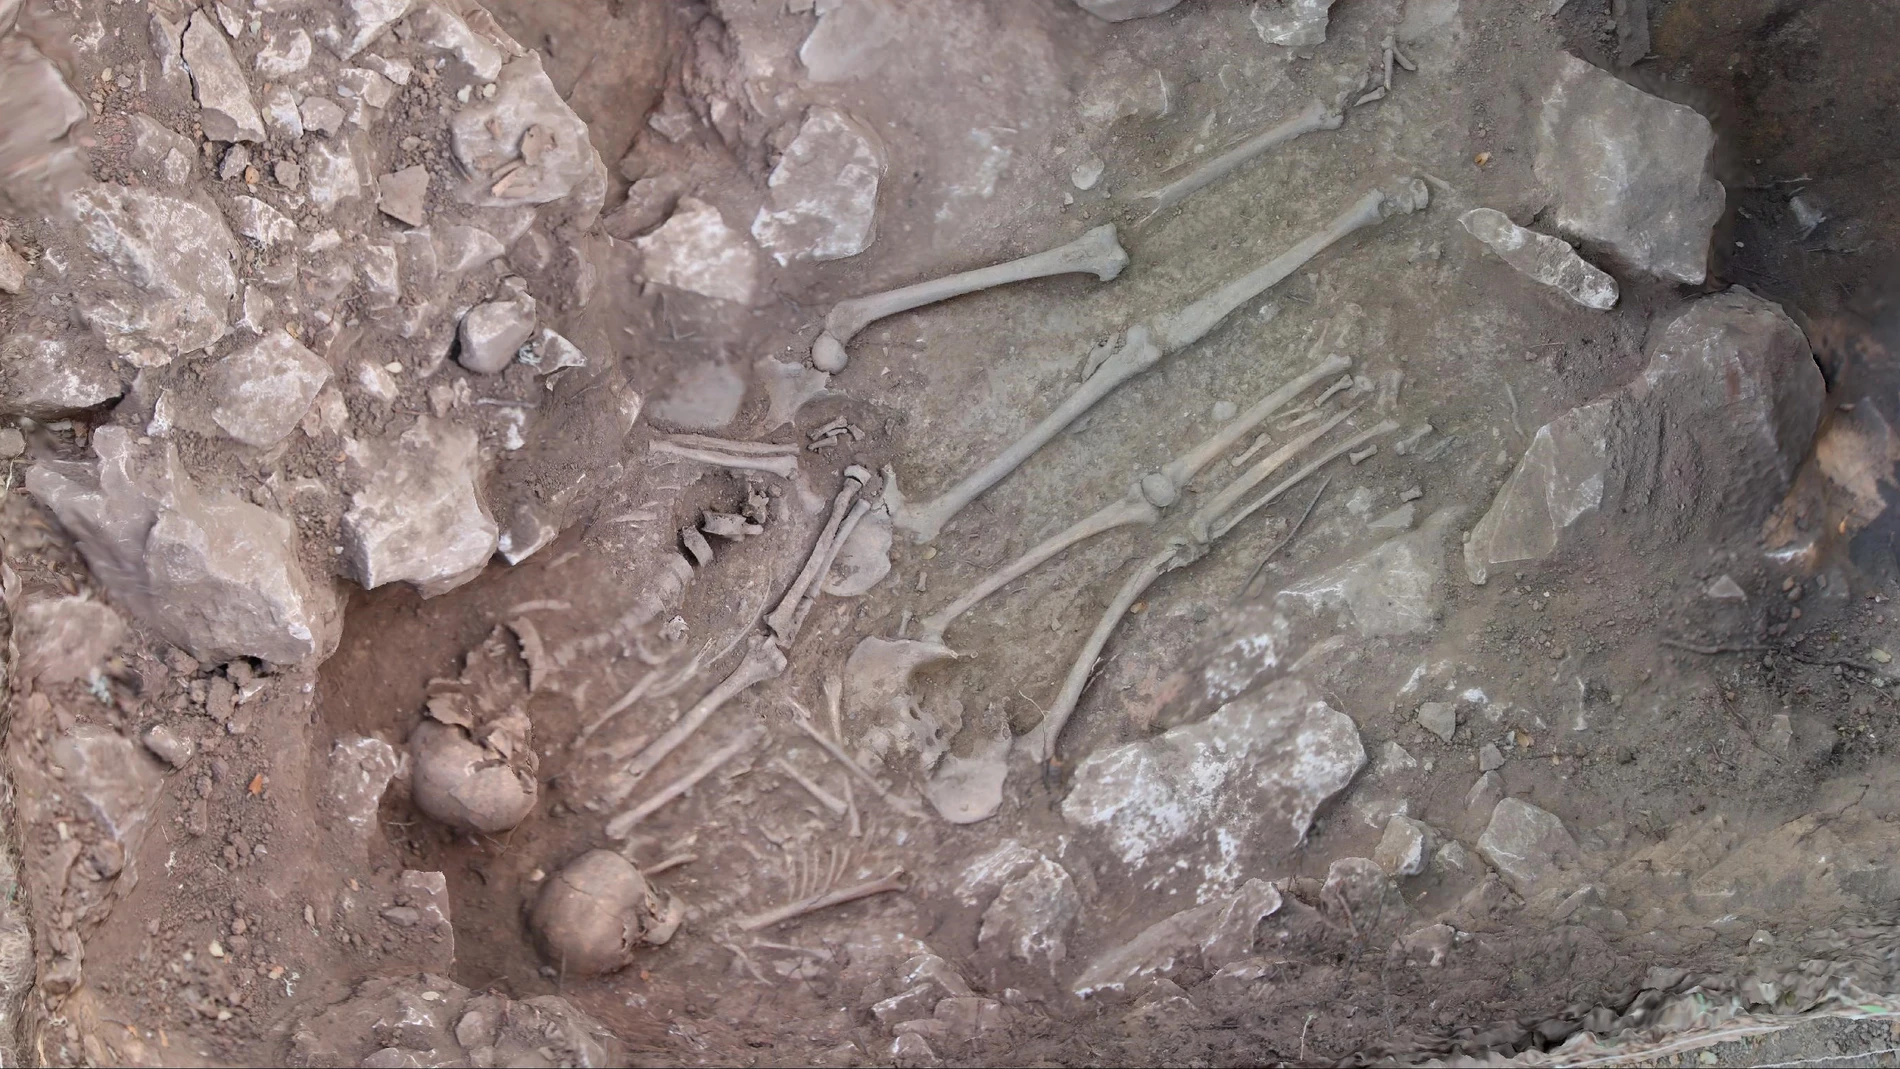  Restos humanos encontrados en el cerro de San Cristóbal en Cuevas de Soria (Edad de Hierro, s.-VI-IV a.C)